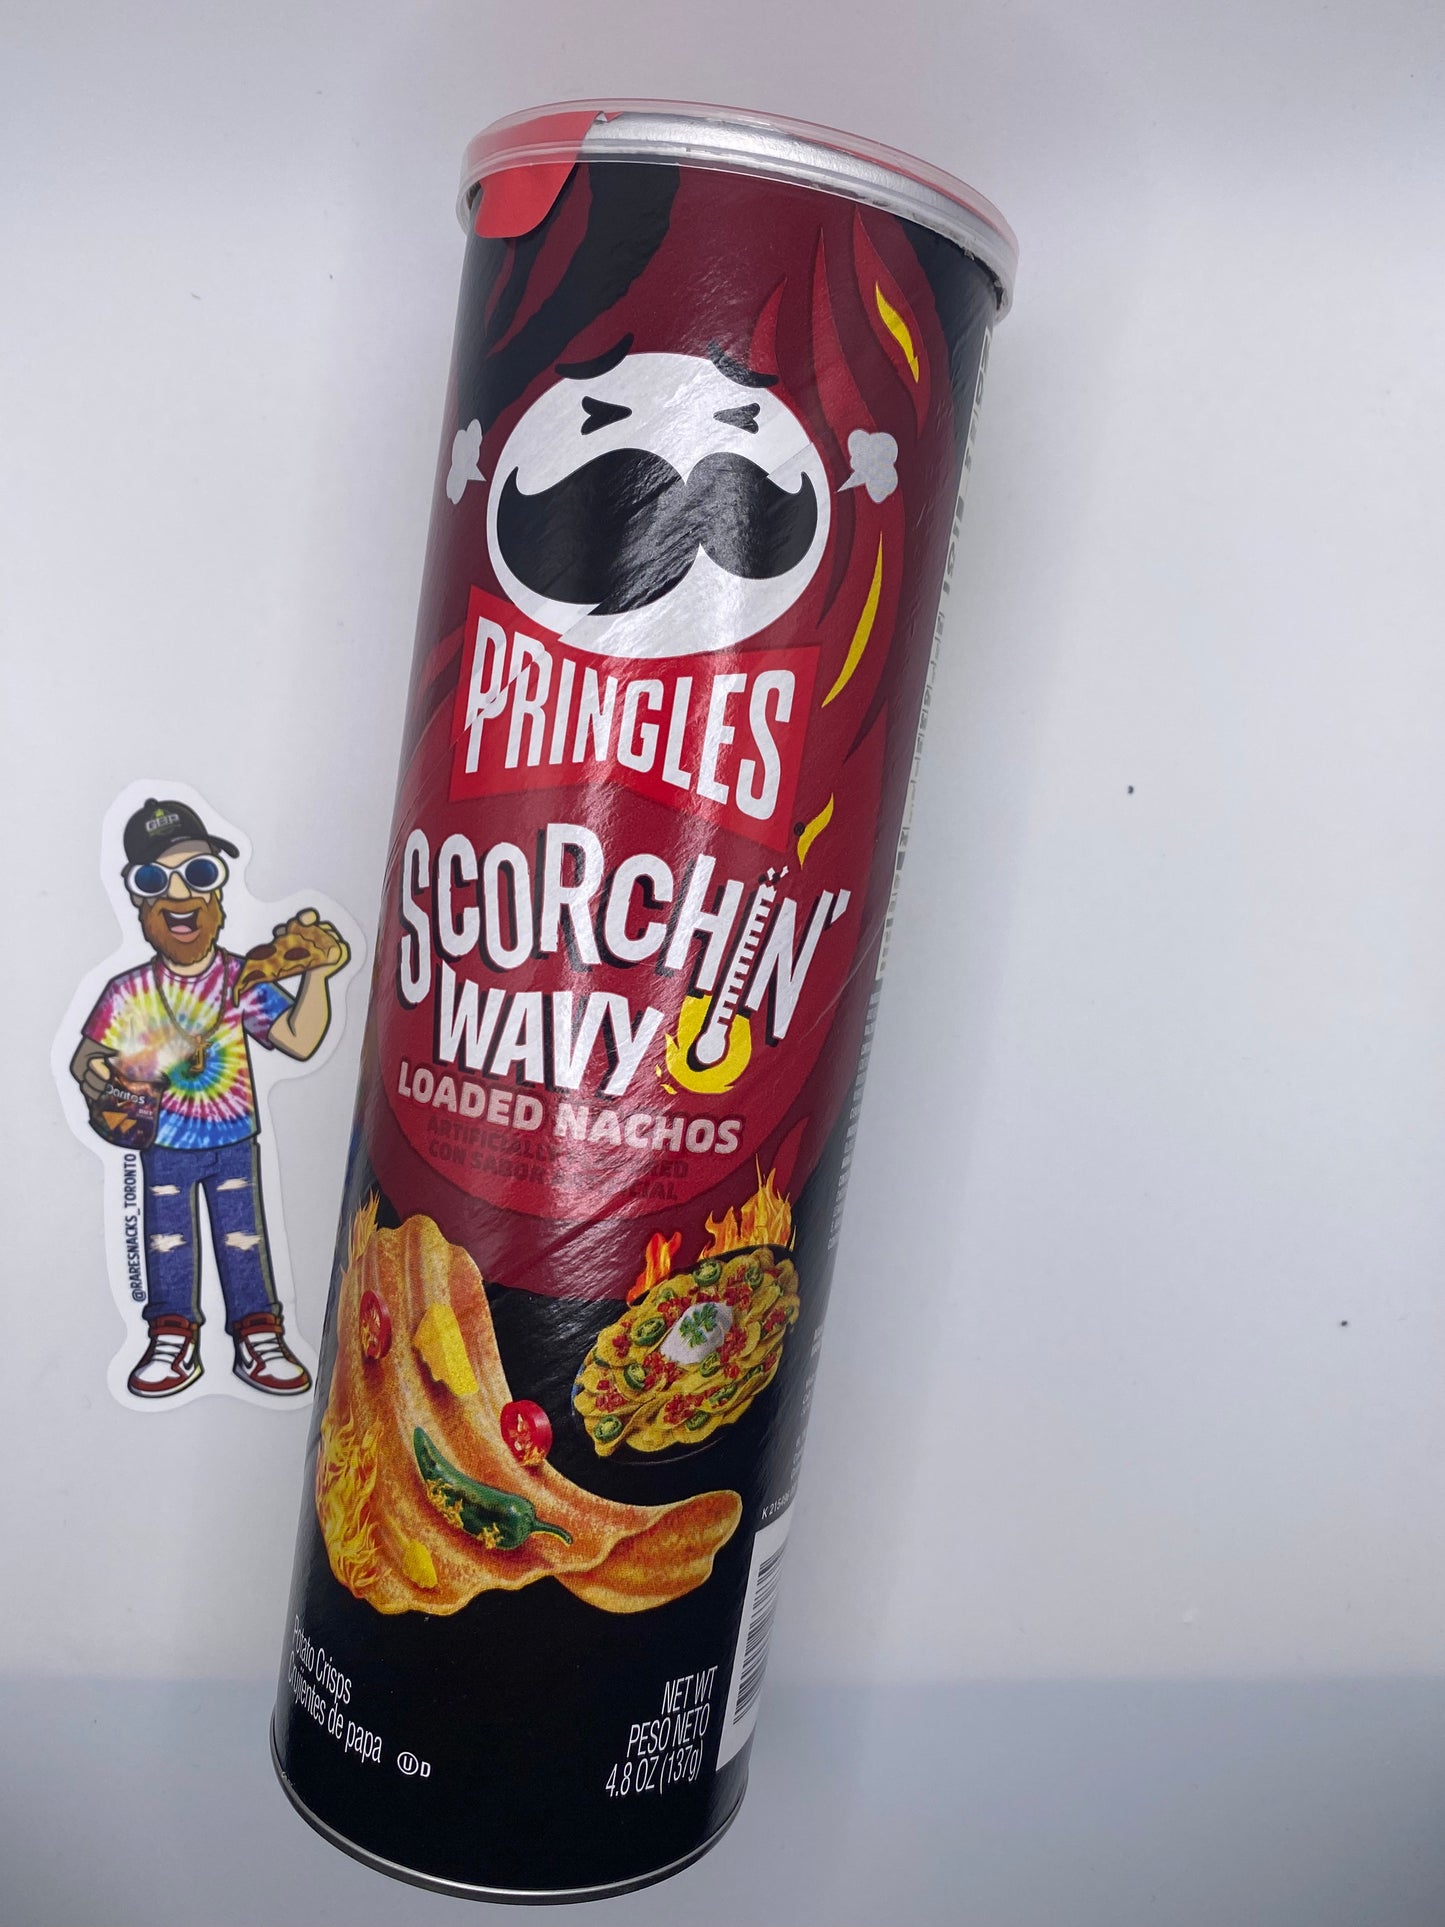 Pringles Scorchin Wavy Loaded Nachos